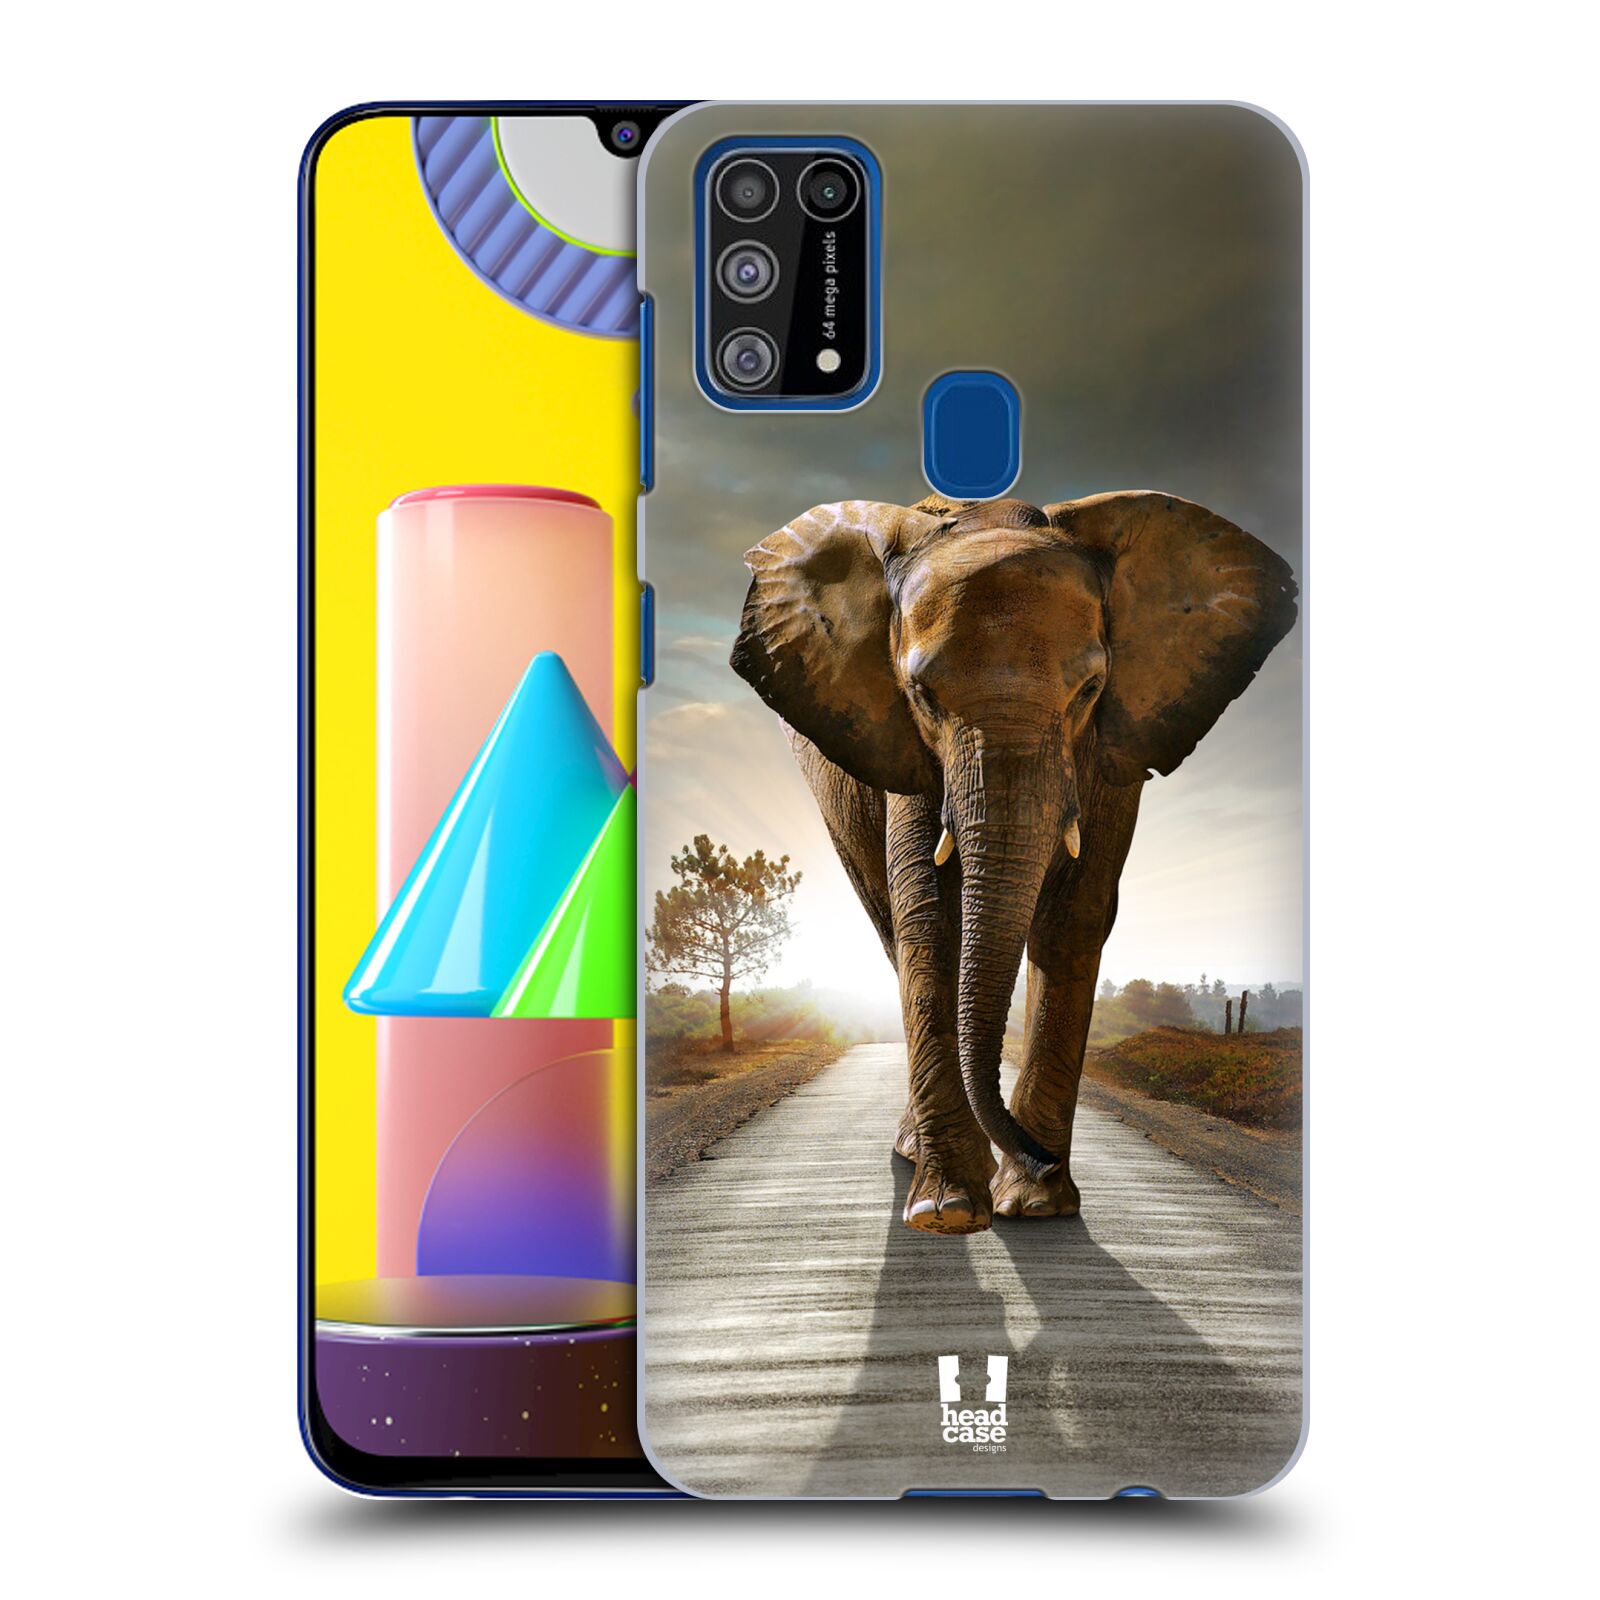 Zadní obal pro mobil Samsung Galaxy M31 - HEAD CASE - Svět zvířat kráčející slon